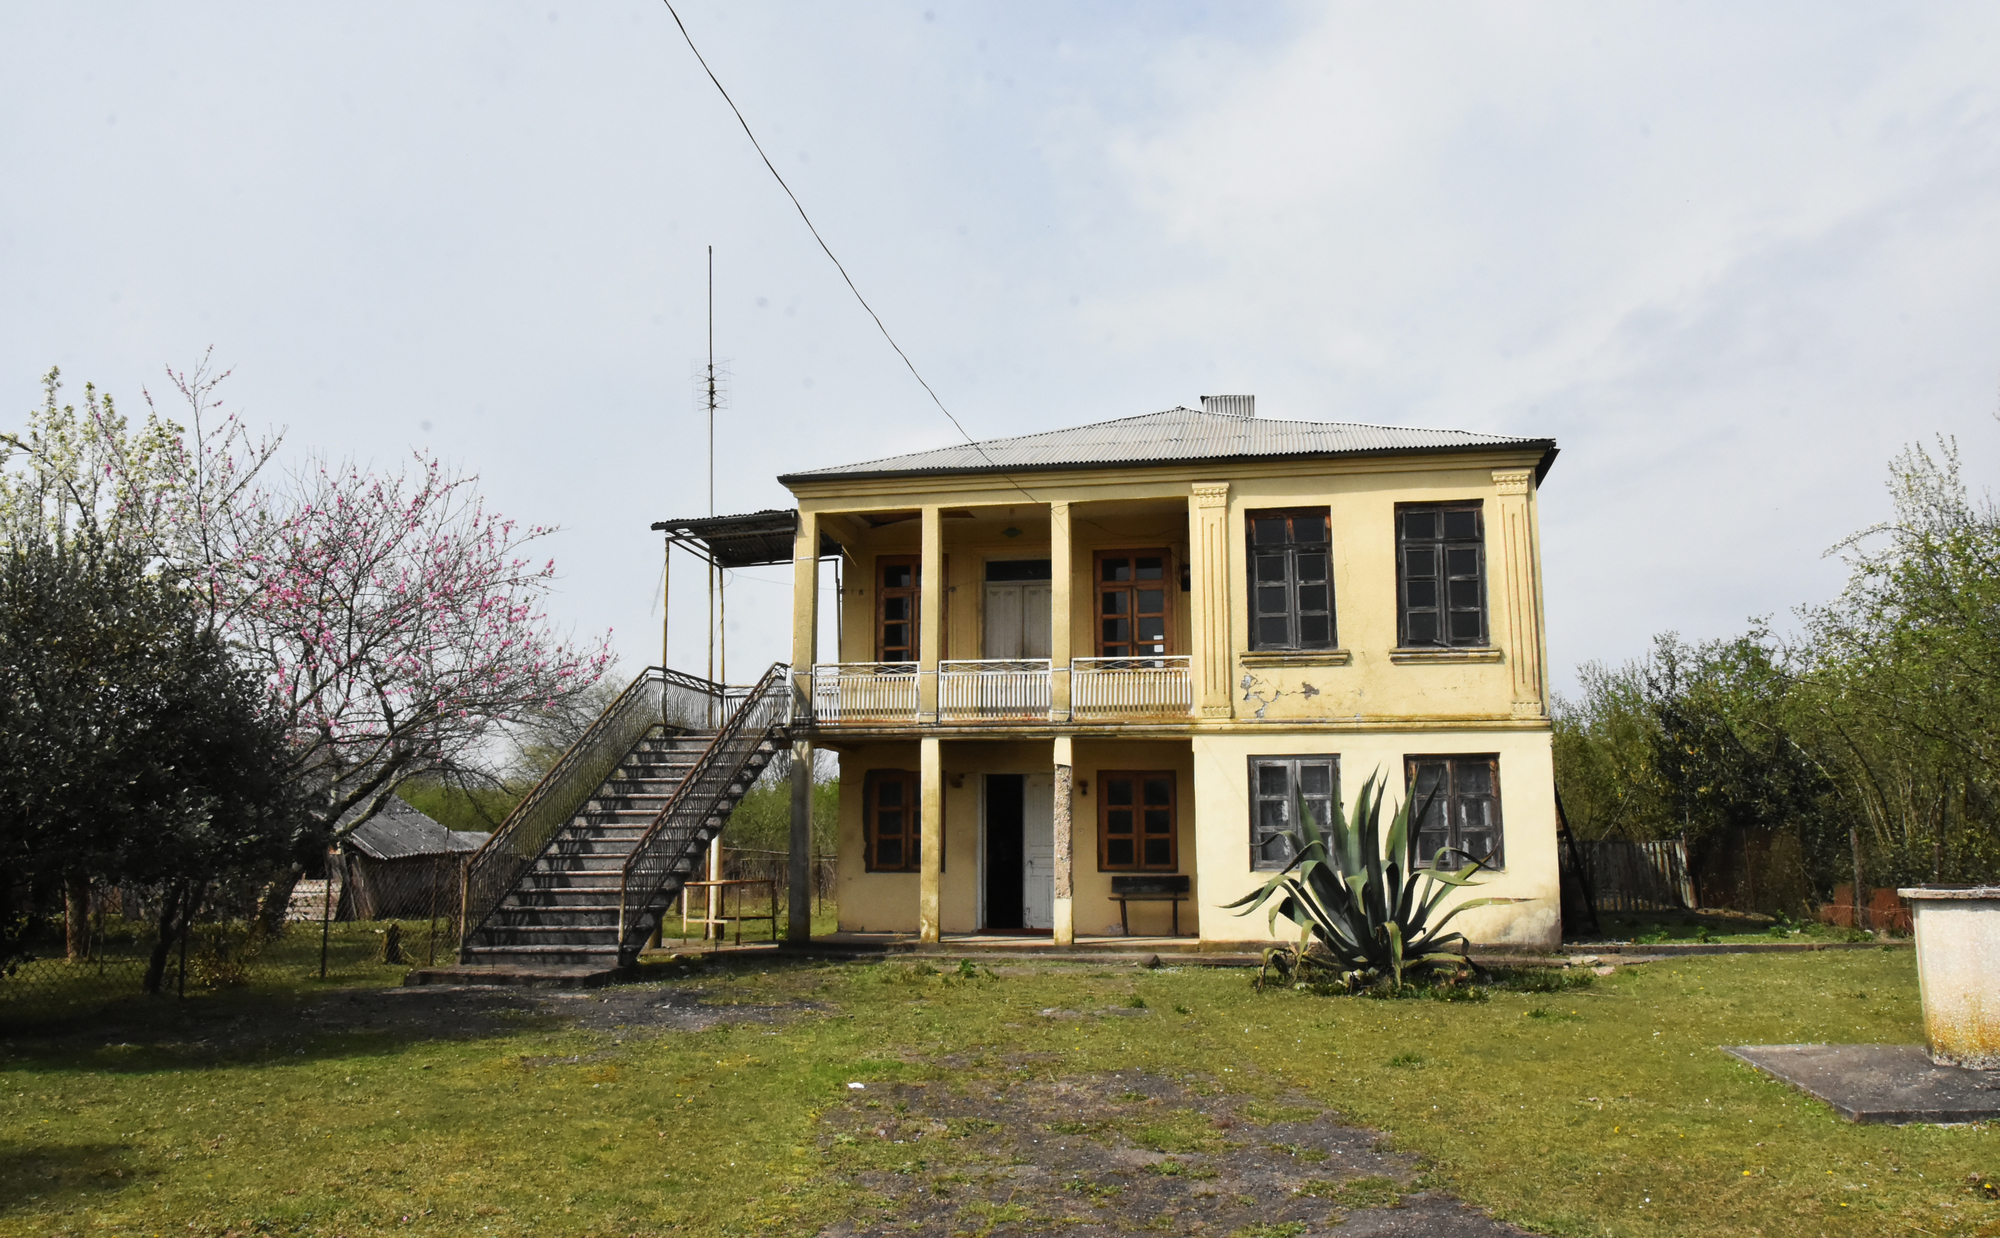 Частные дома в грузии